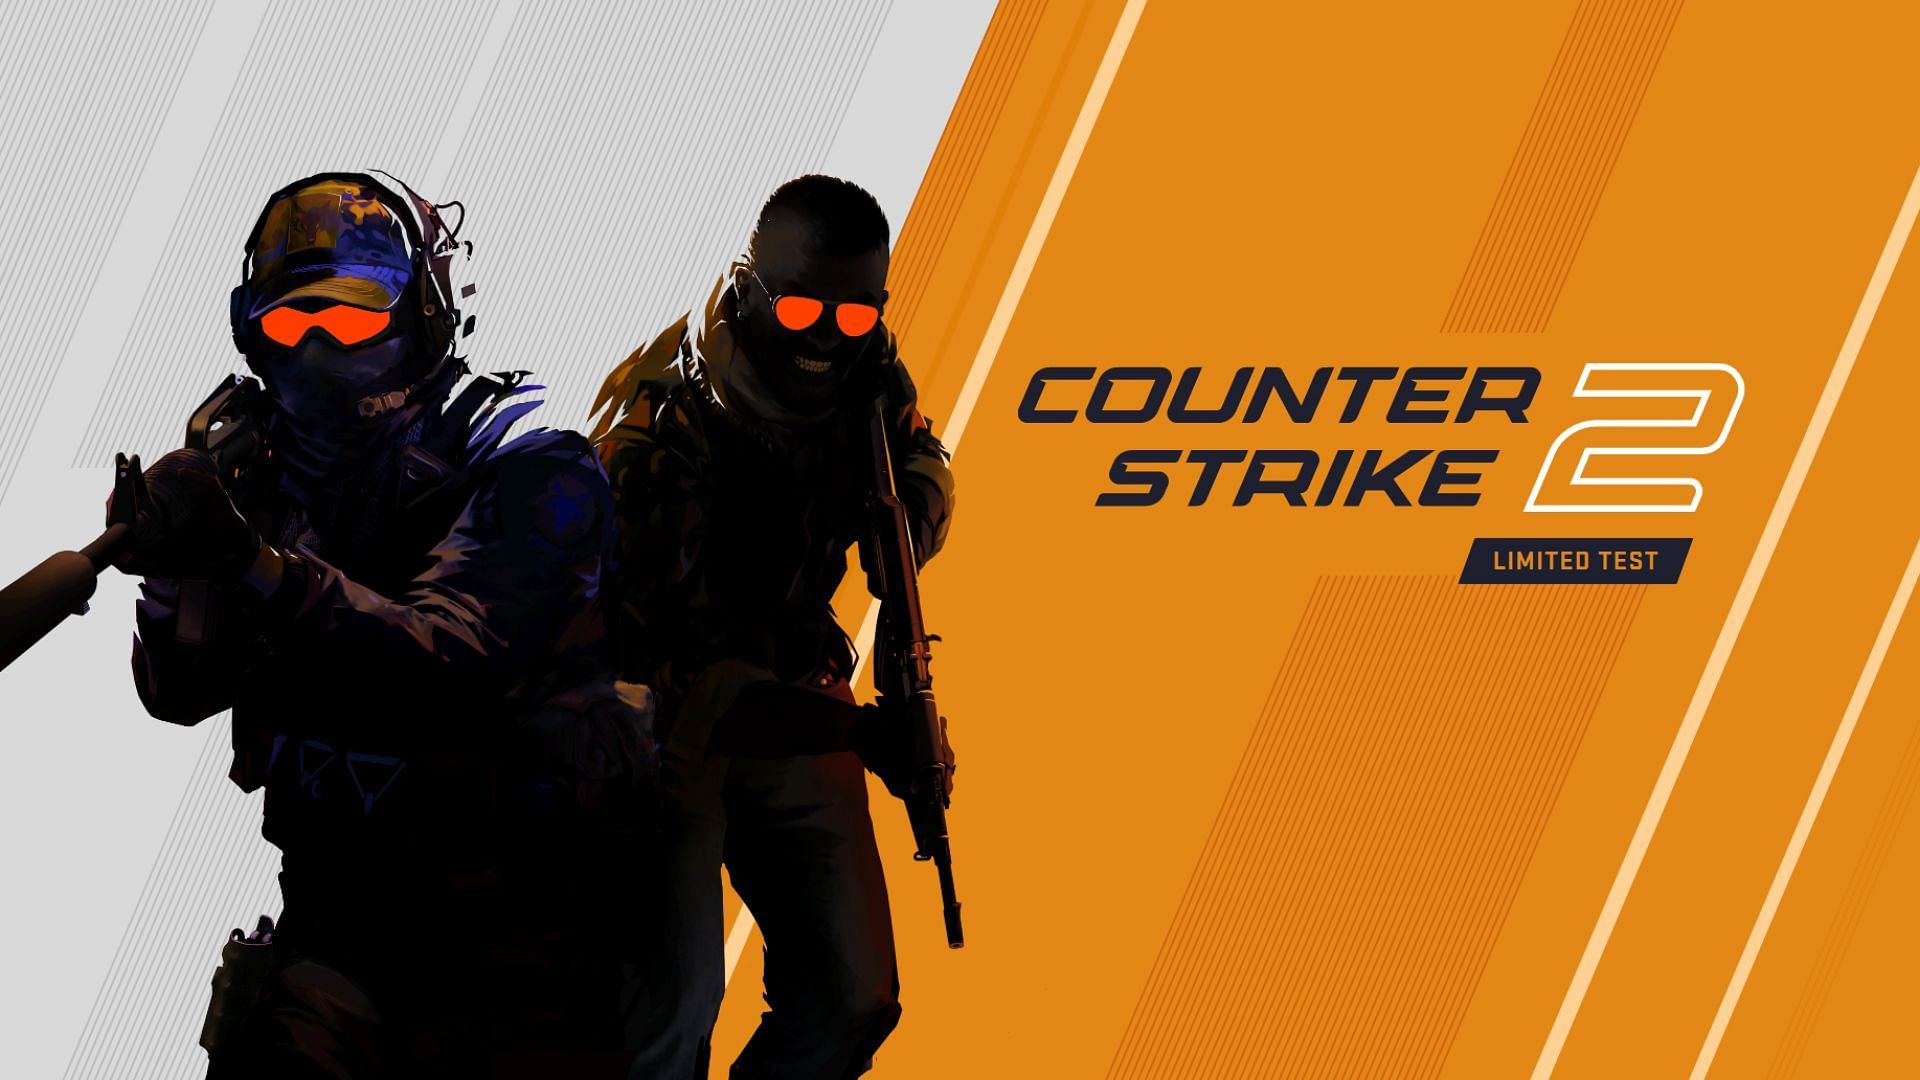 Counter-Strike 2 will be free (Image via Valve)